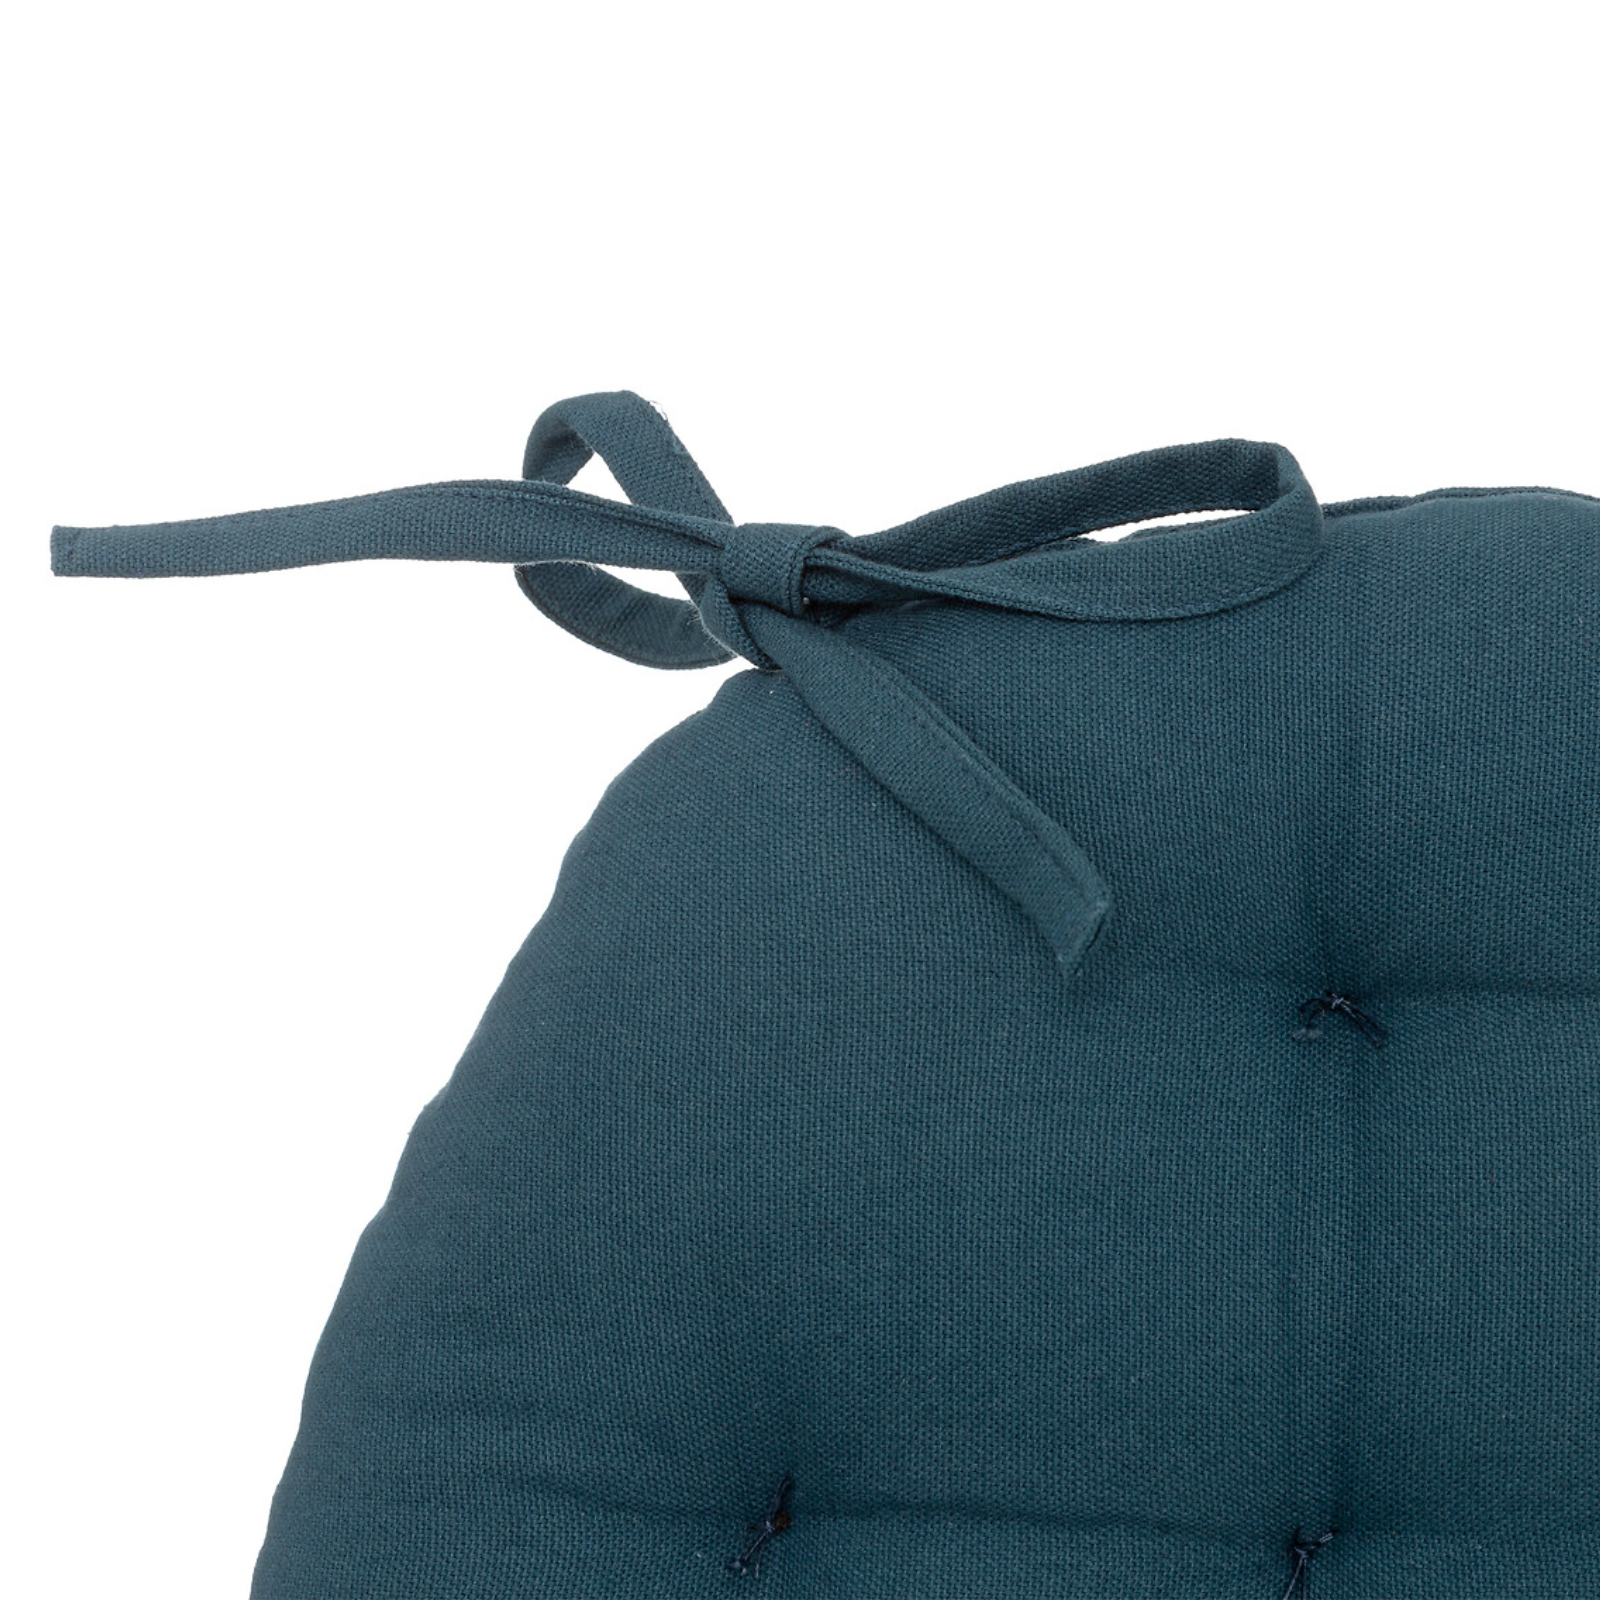 Cuscino rotondo per sedia in cotone con imbottitura interno in cotone riciclato Ottanio